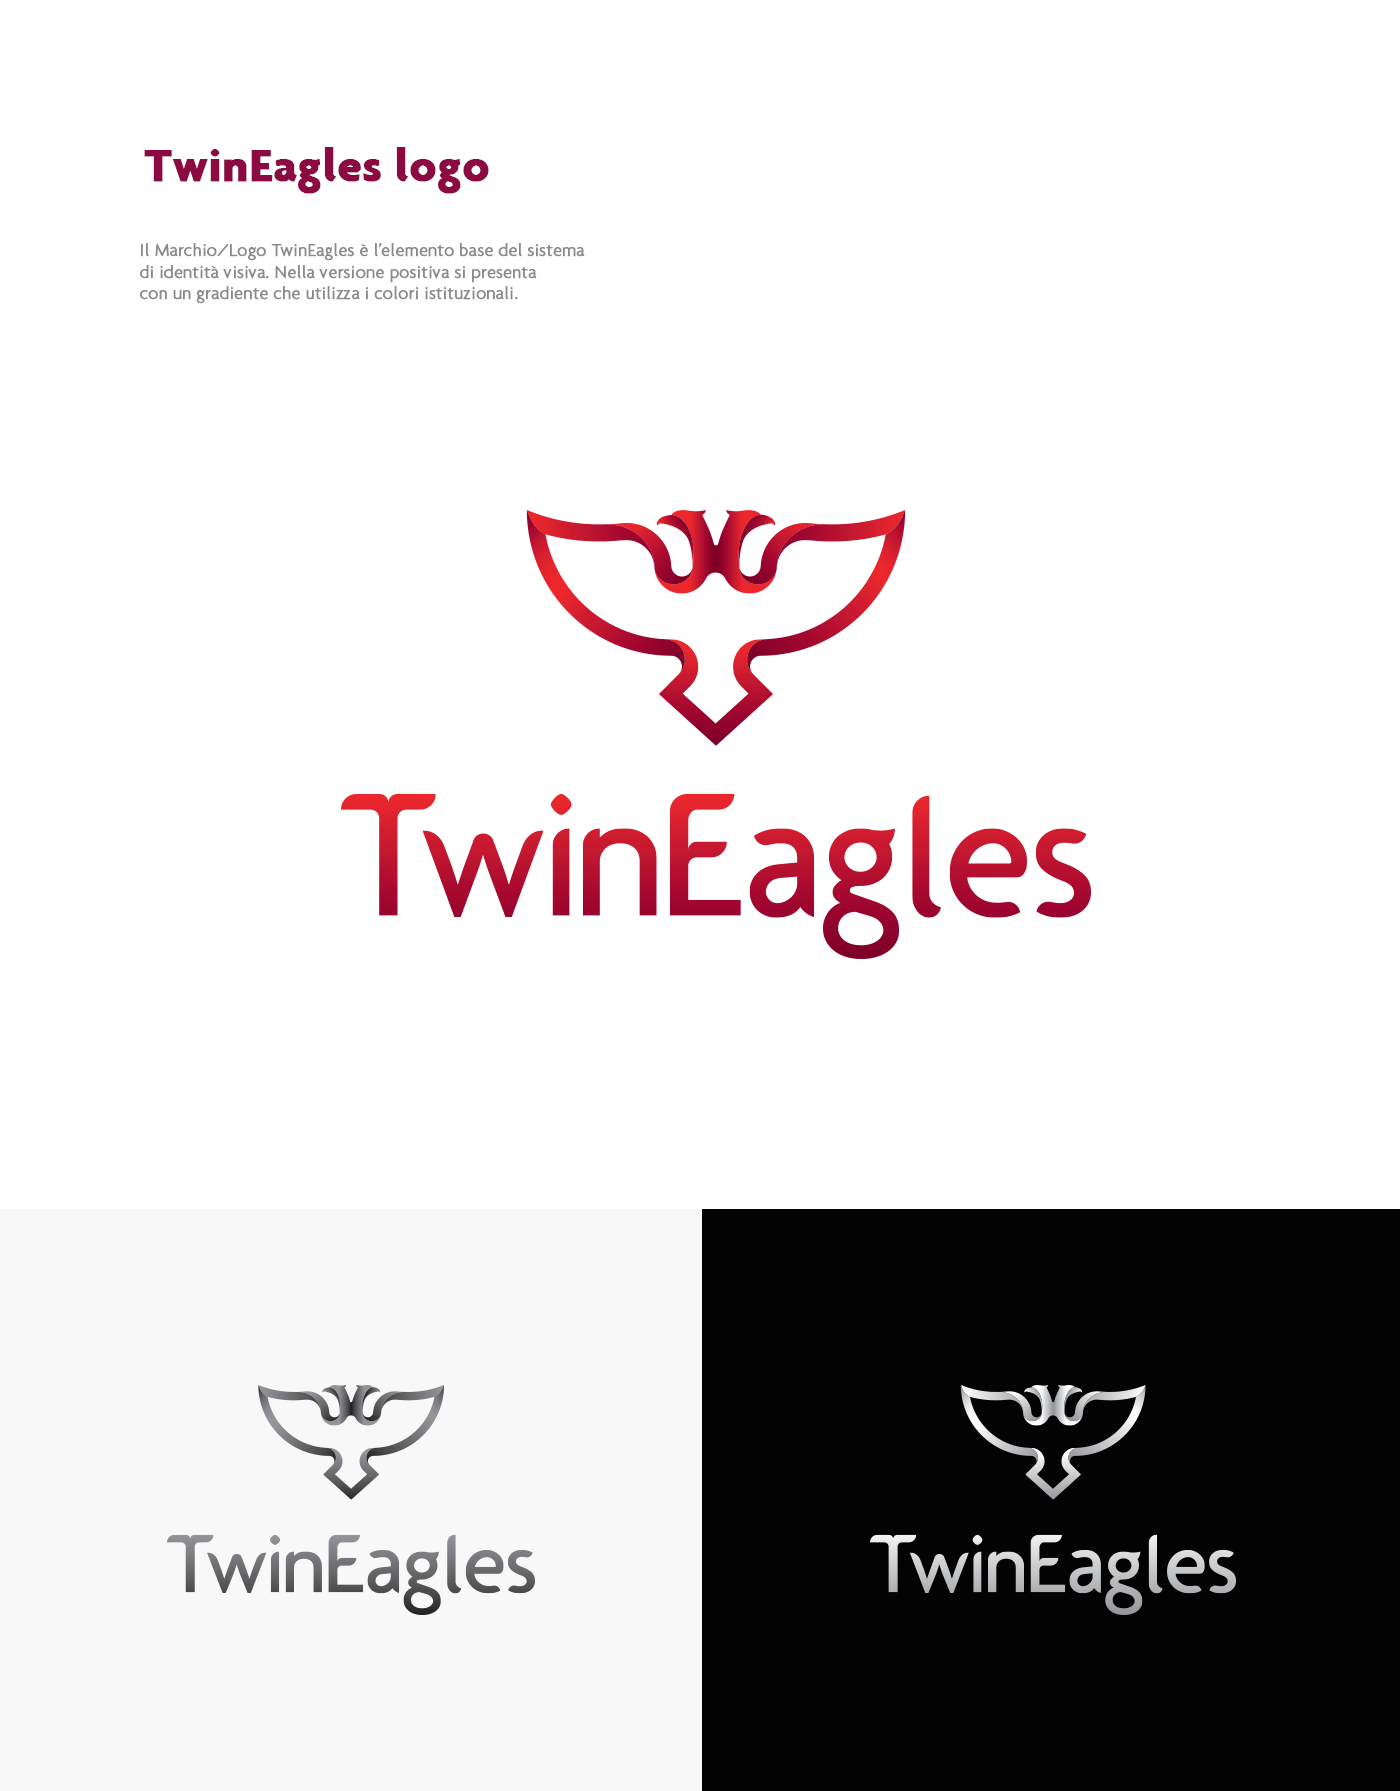 brand identity brand corporate Corporate Identity logo Logo Design Brand Design airplane airline airline company Albania TwinEagles TwinEagles brand TwinEagles Corporate graphic deisgn